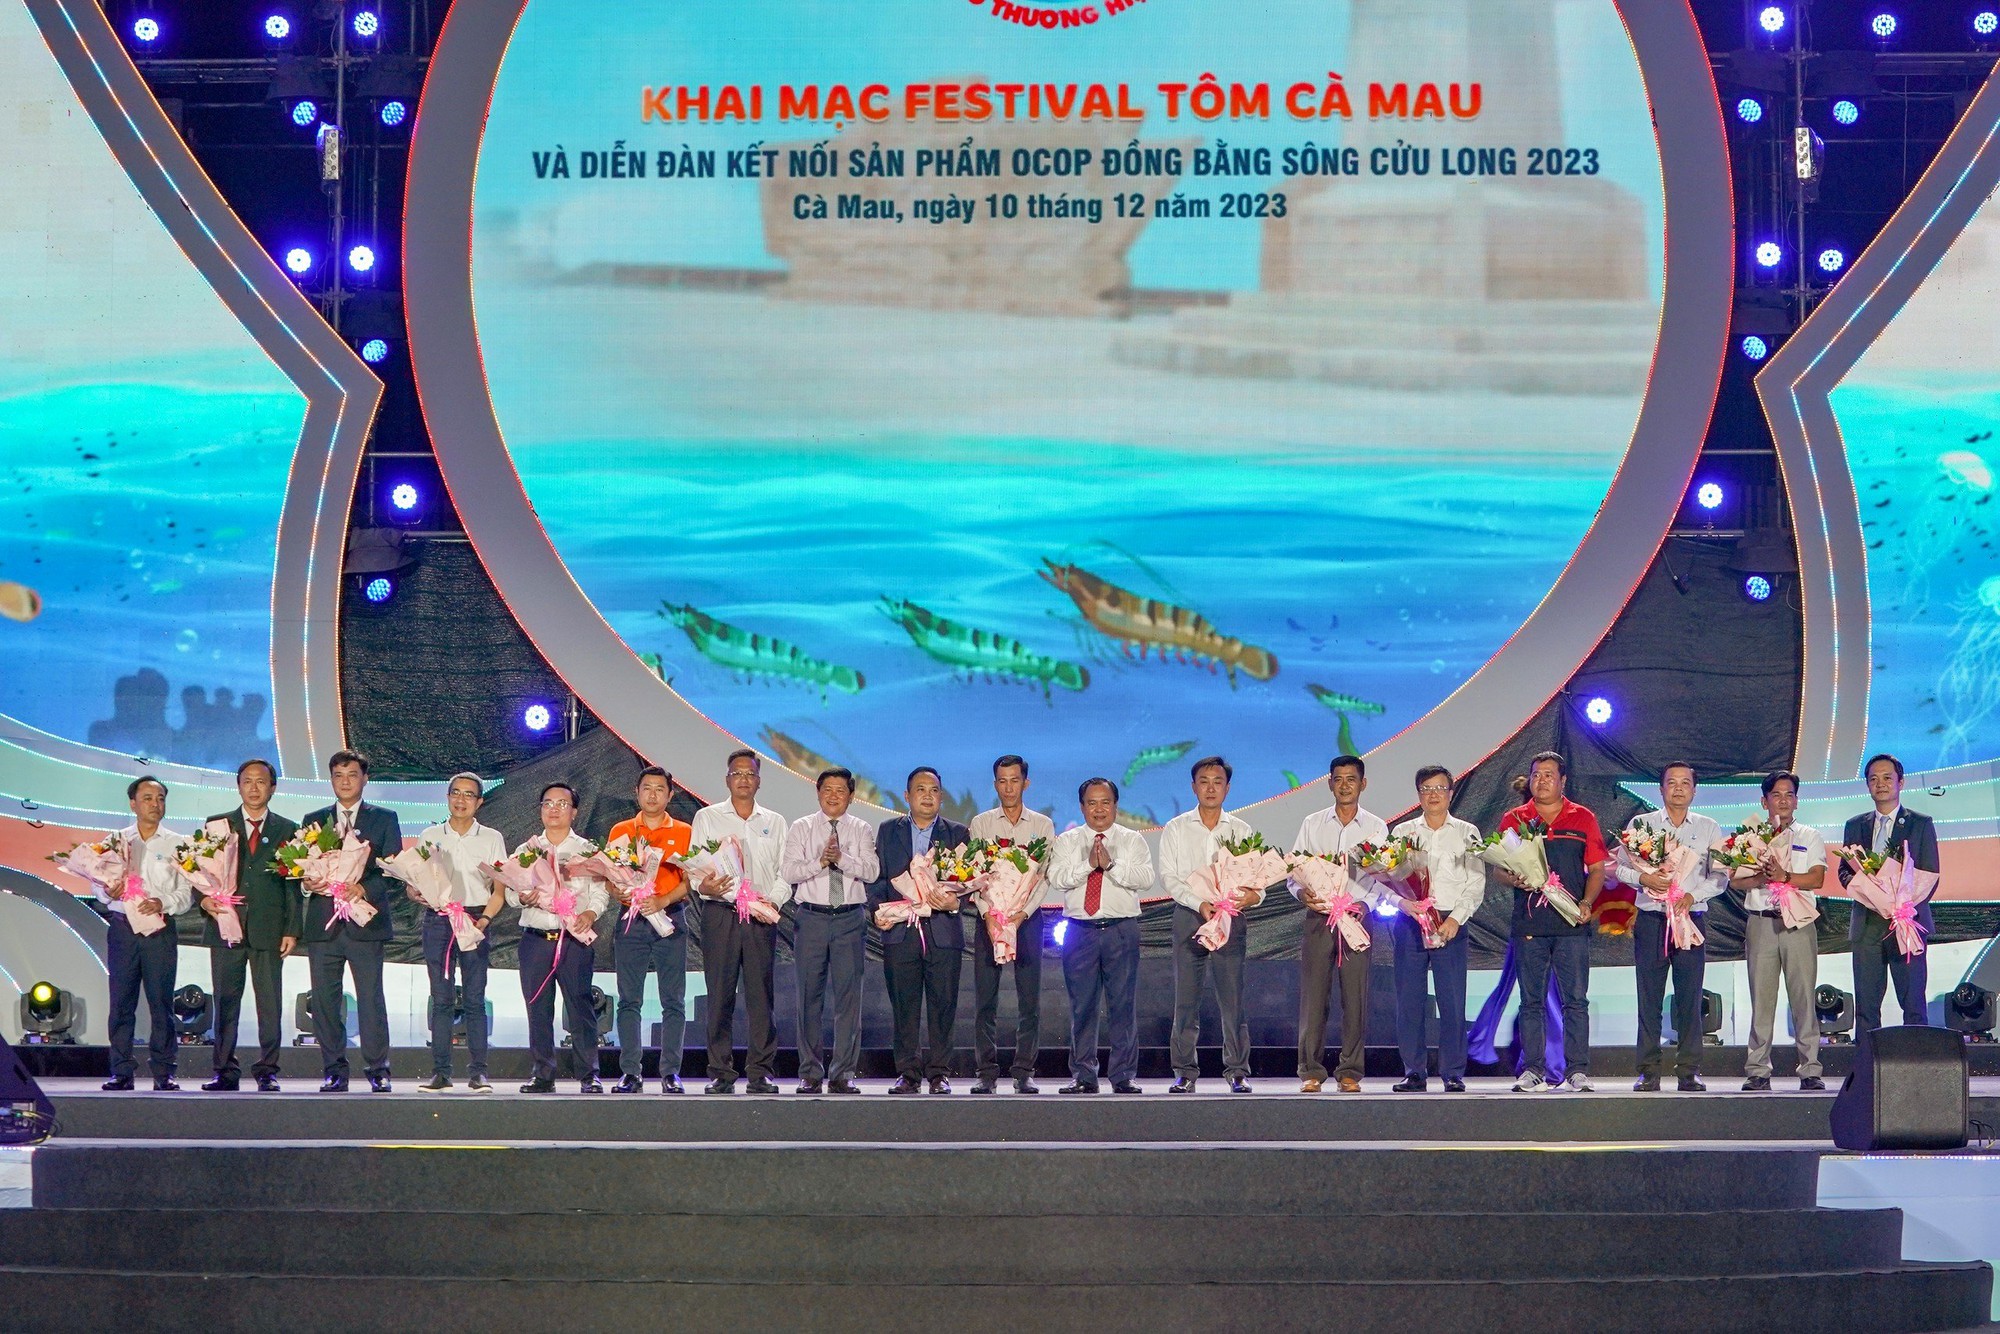 Agribank đồng hành cùng Festival Tôm Cà Mau và và Diễn đàn kết nối sản phẩm OCOP Đồng bằng sông Cửu Long 2023 - Ảnh 1.